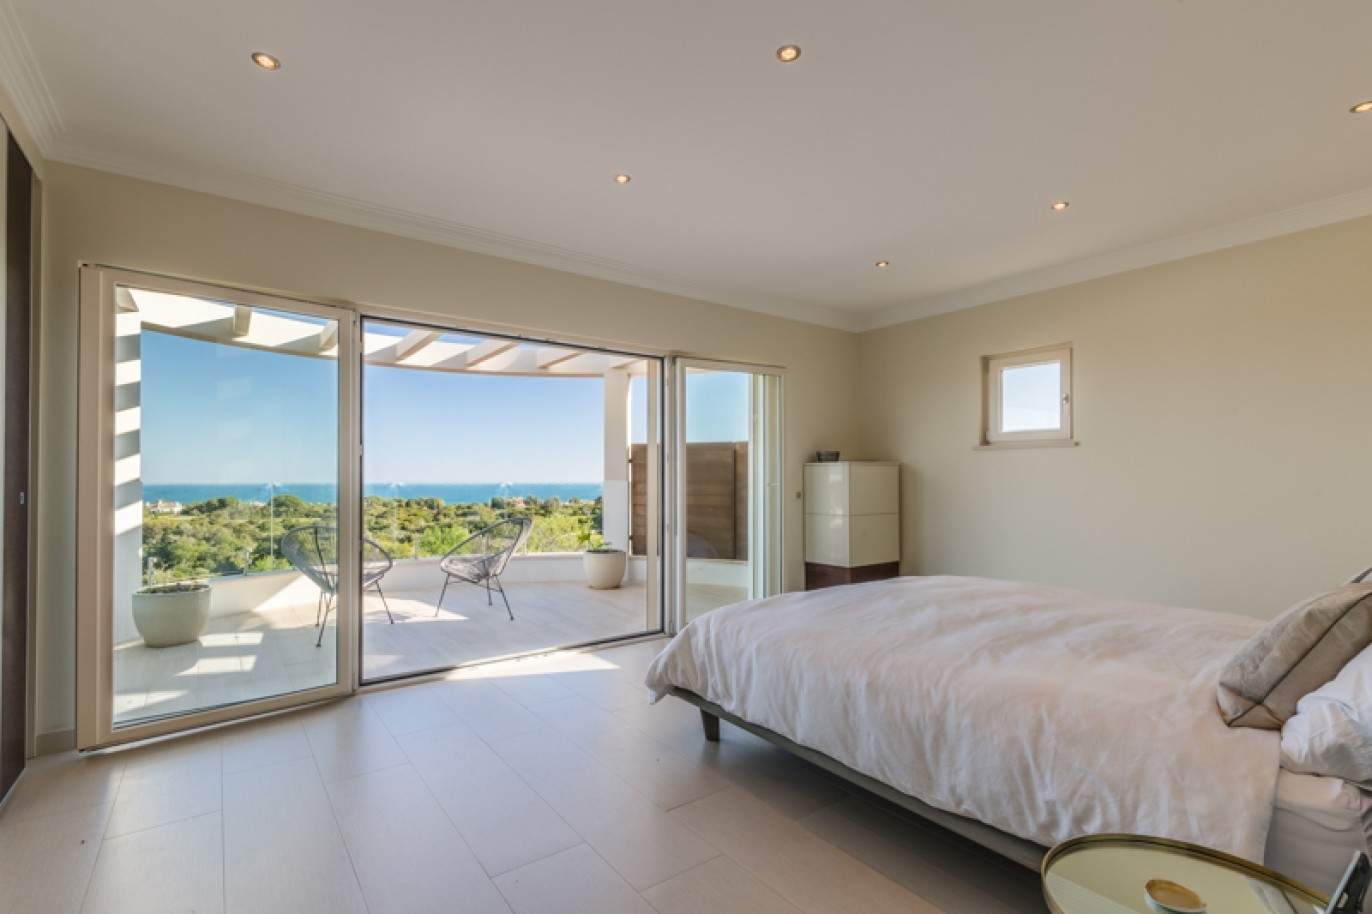 Freistehende villa zum Verkauf mit Meerblick, in der Nähe von Strand und golf, Carvoeiro, Algarve, Portugal_76420